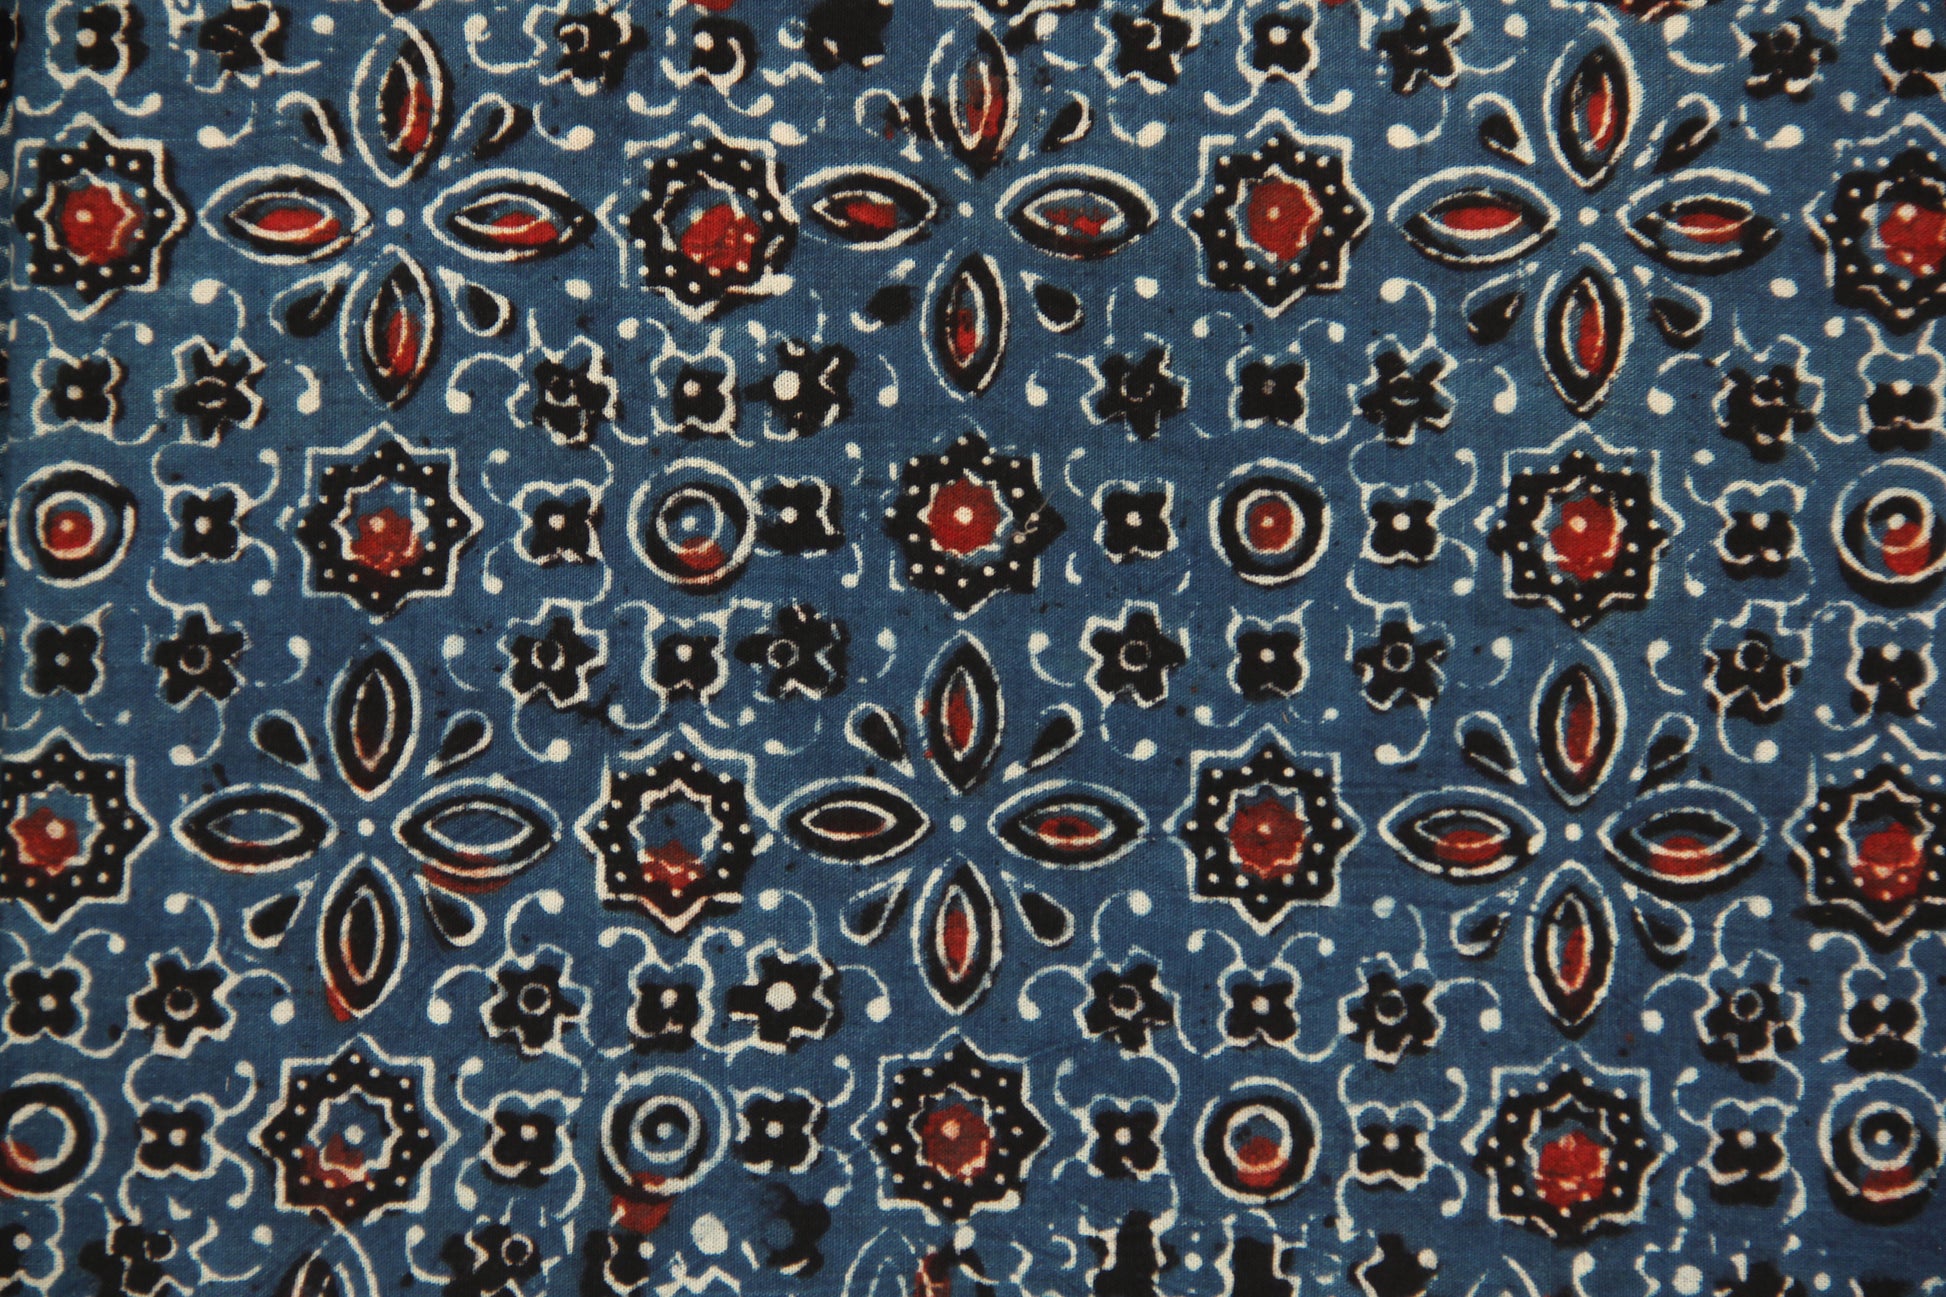 Indigo ajrakh hand block print fabric, Ajrakh prints fabric in cotton, Cotton indigo ajrakh fabric, Ethical fashion